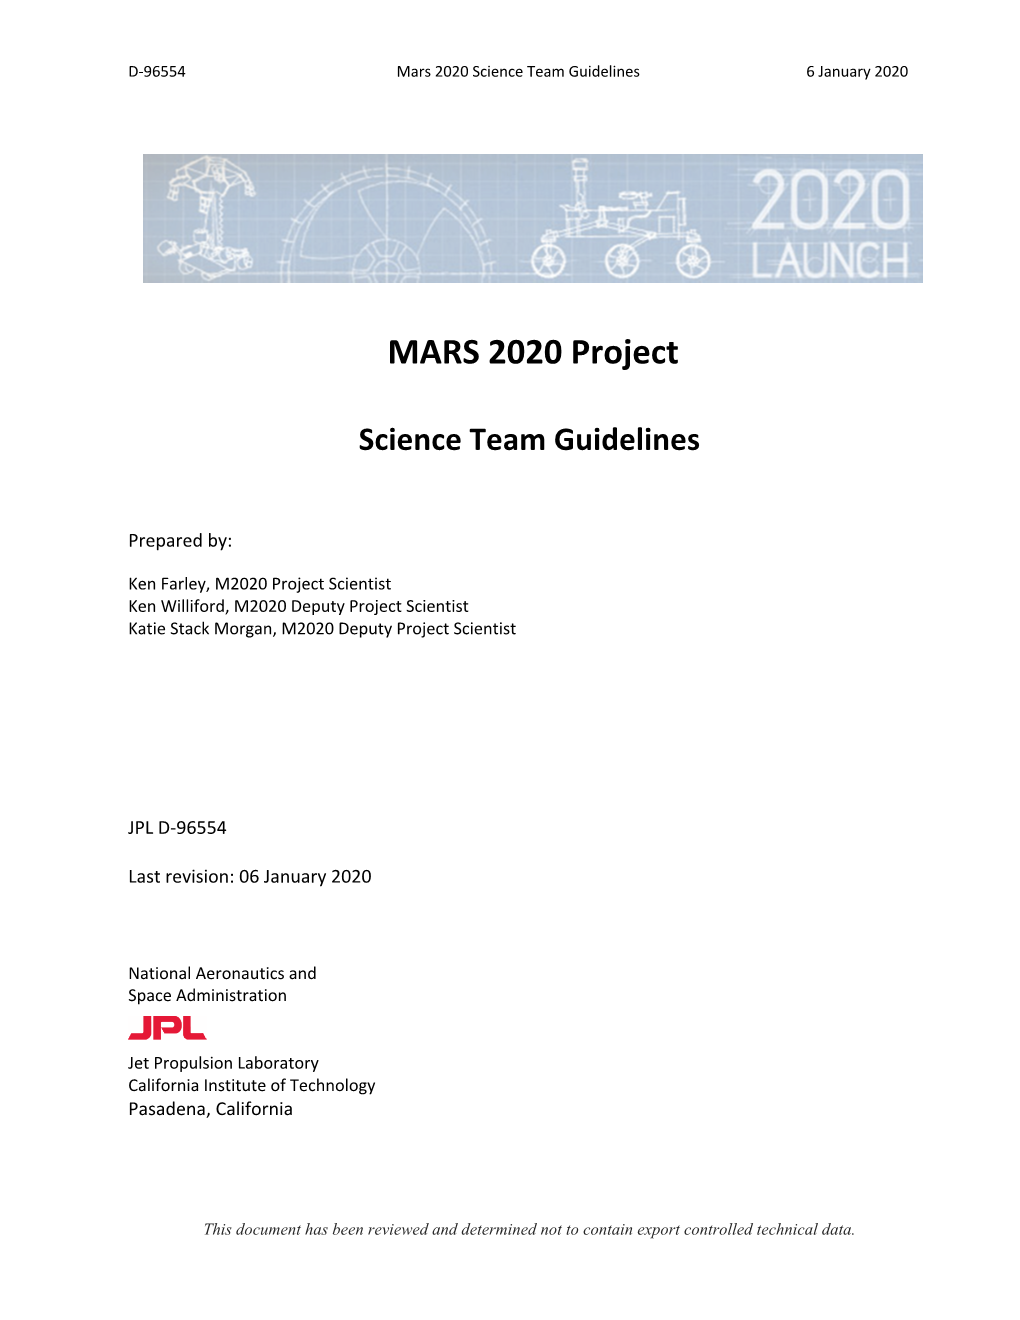 MARS 2020 Project